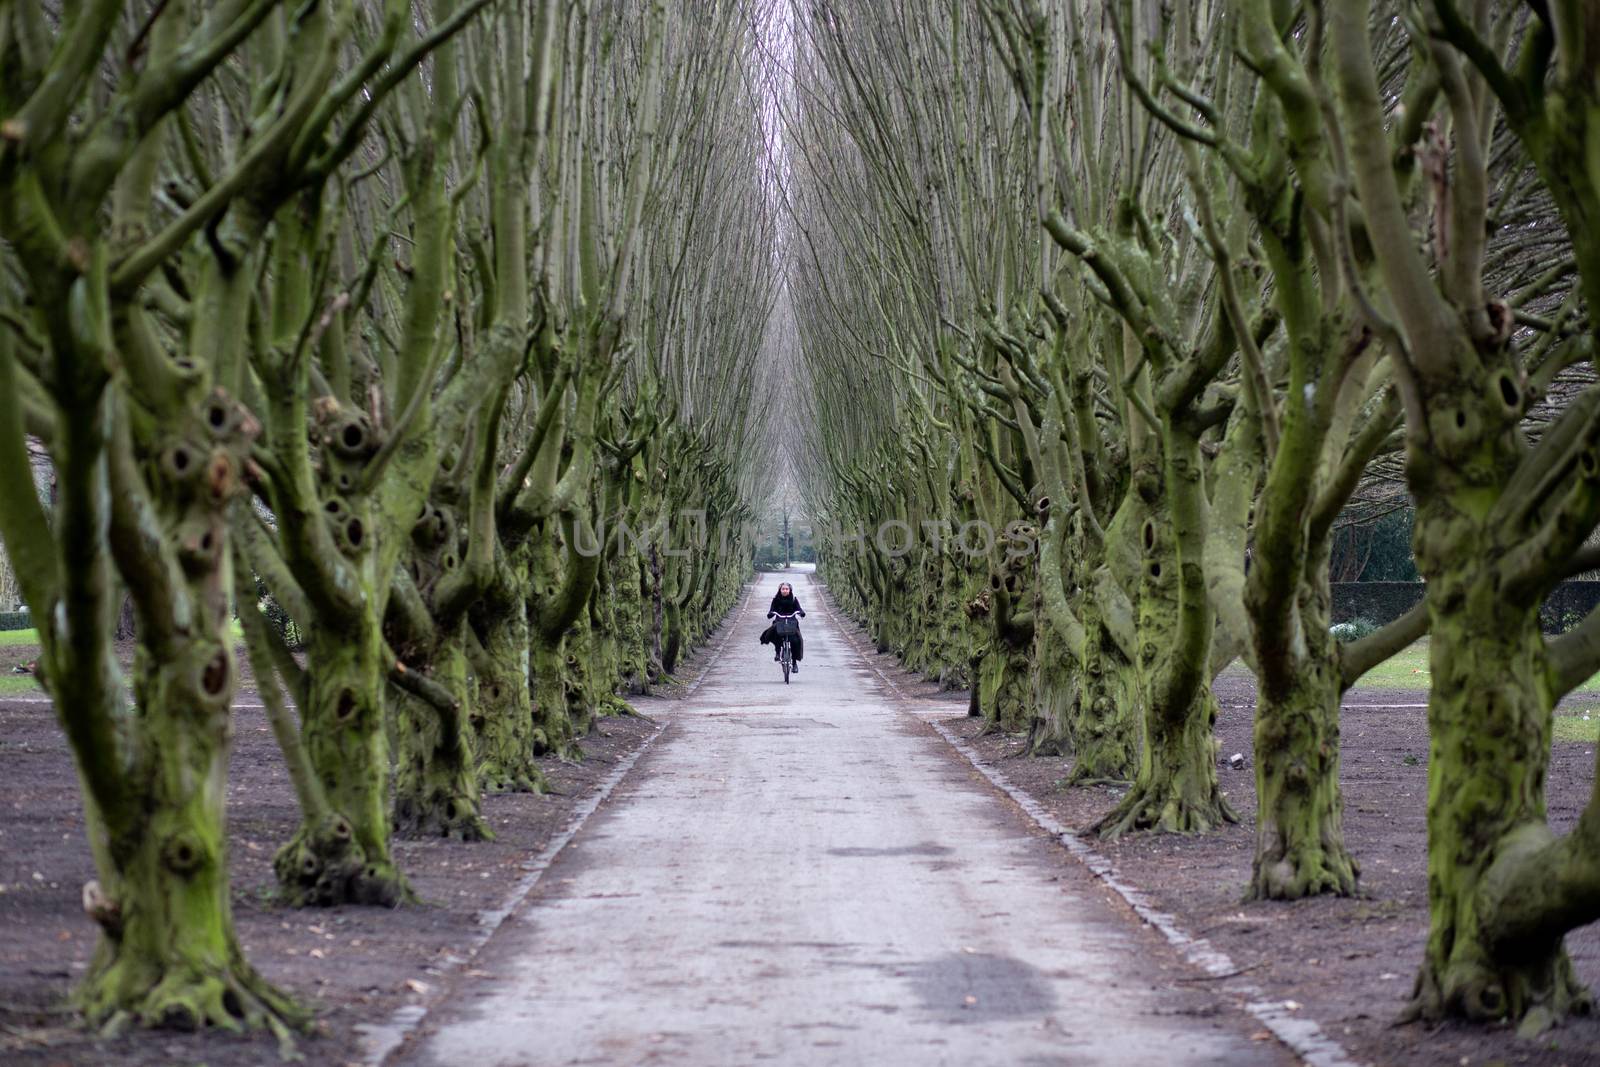 Moody Tree Alley on Vestre Cemetery in Copenhagen by oliverfoerstner